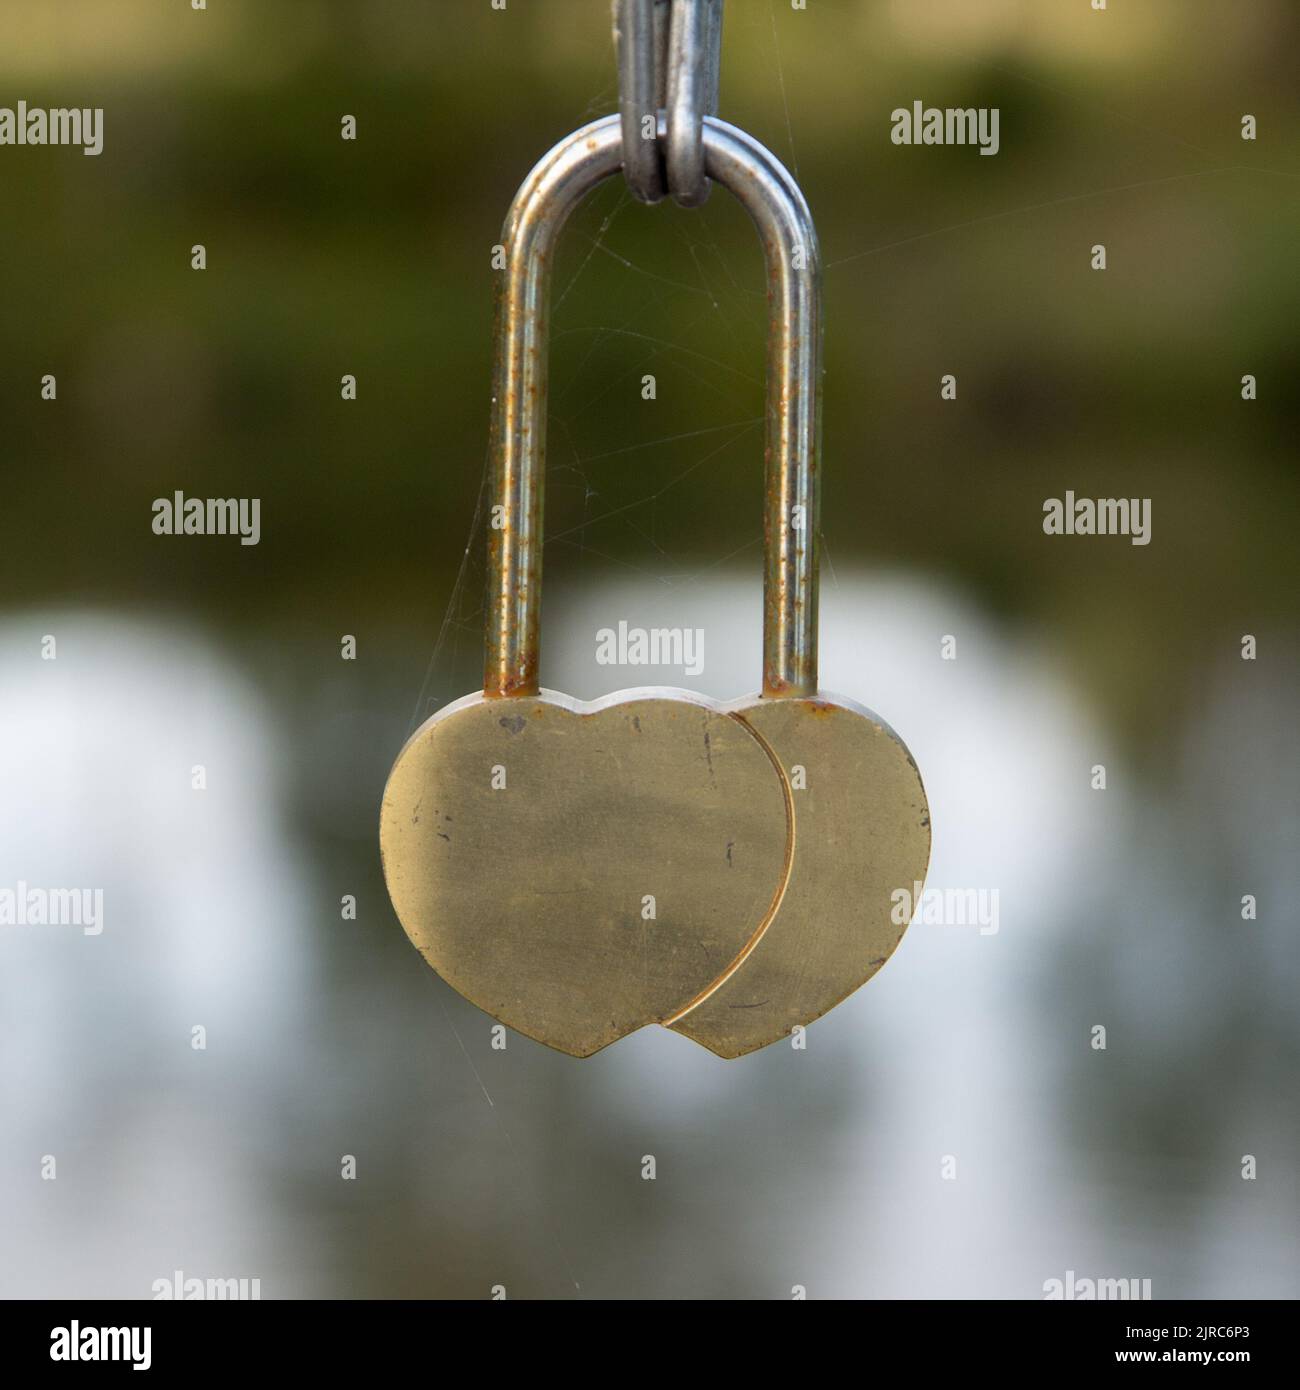 heart shaped padlock Stock Photo